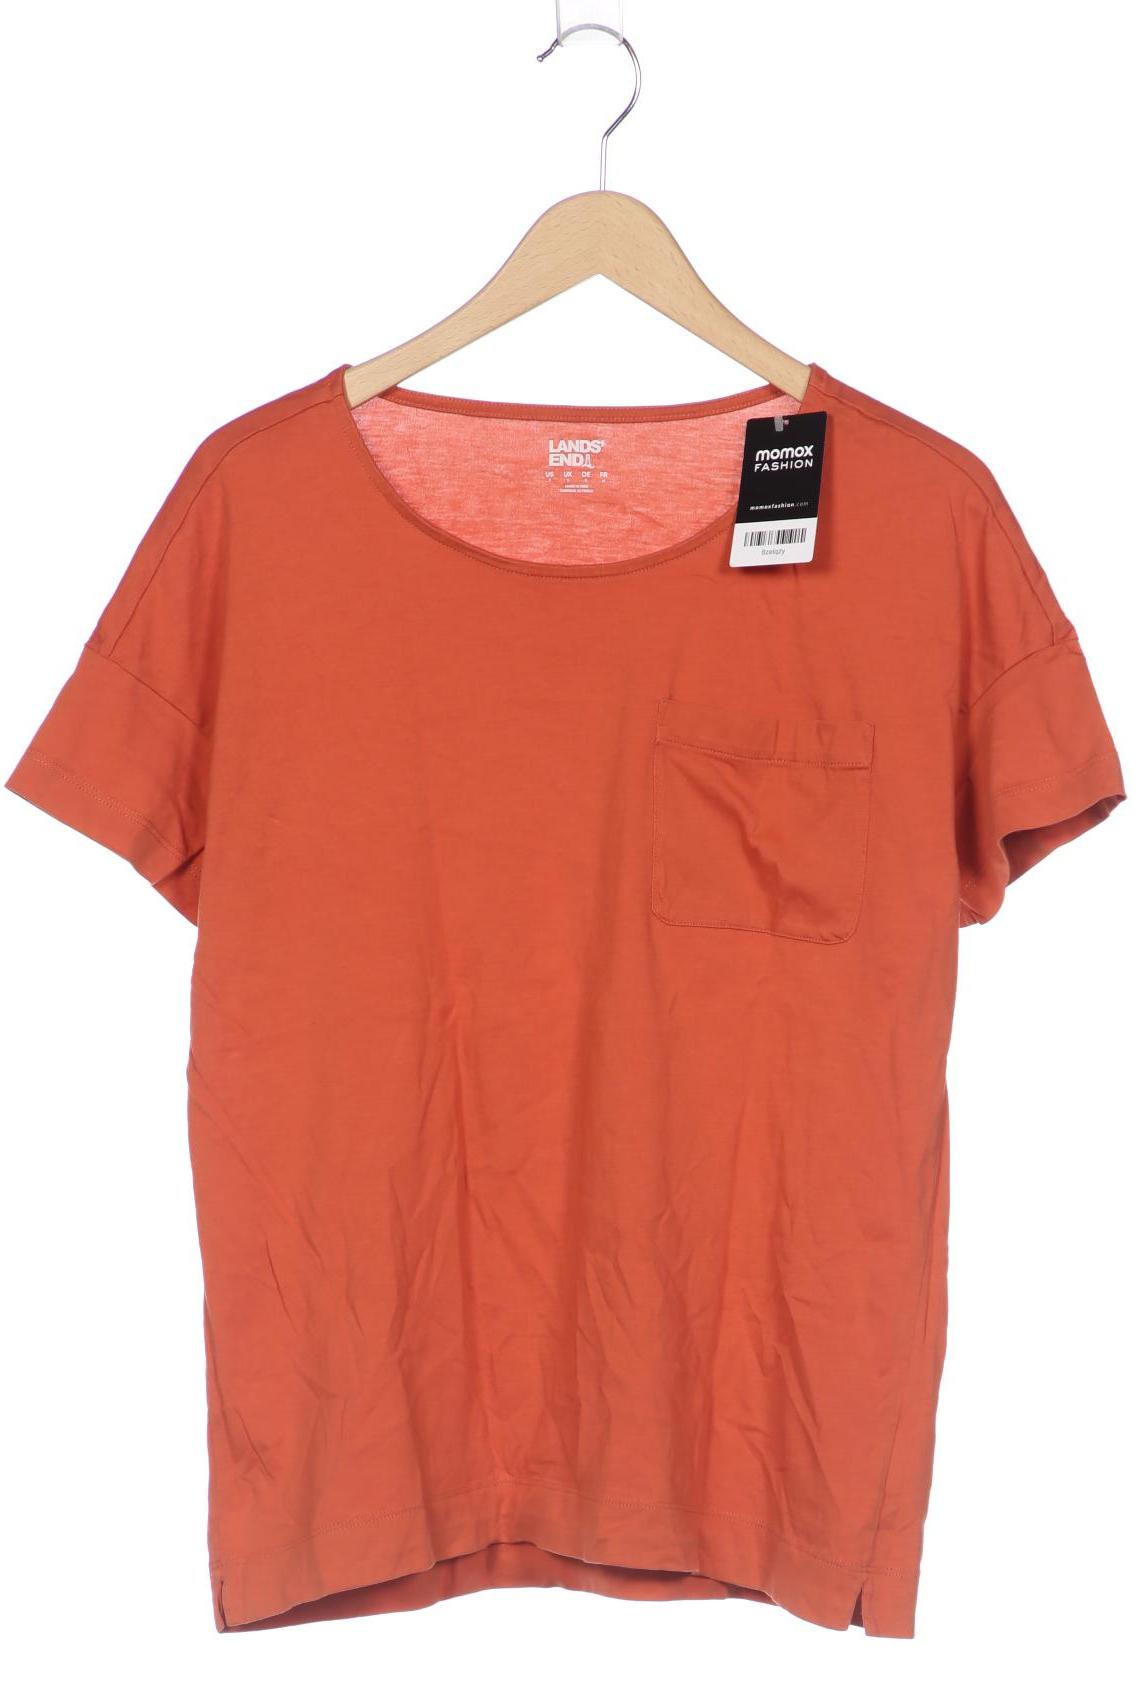 Lands End Damen T-Shirt, orange, Gr. 36 von lands end